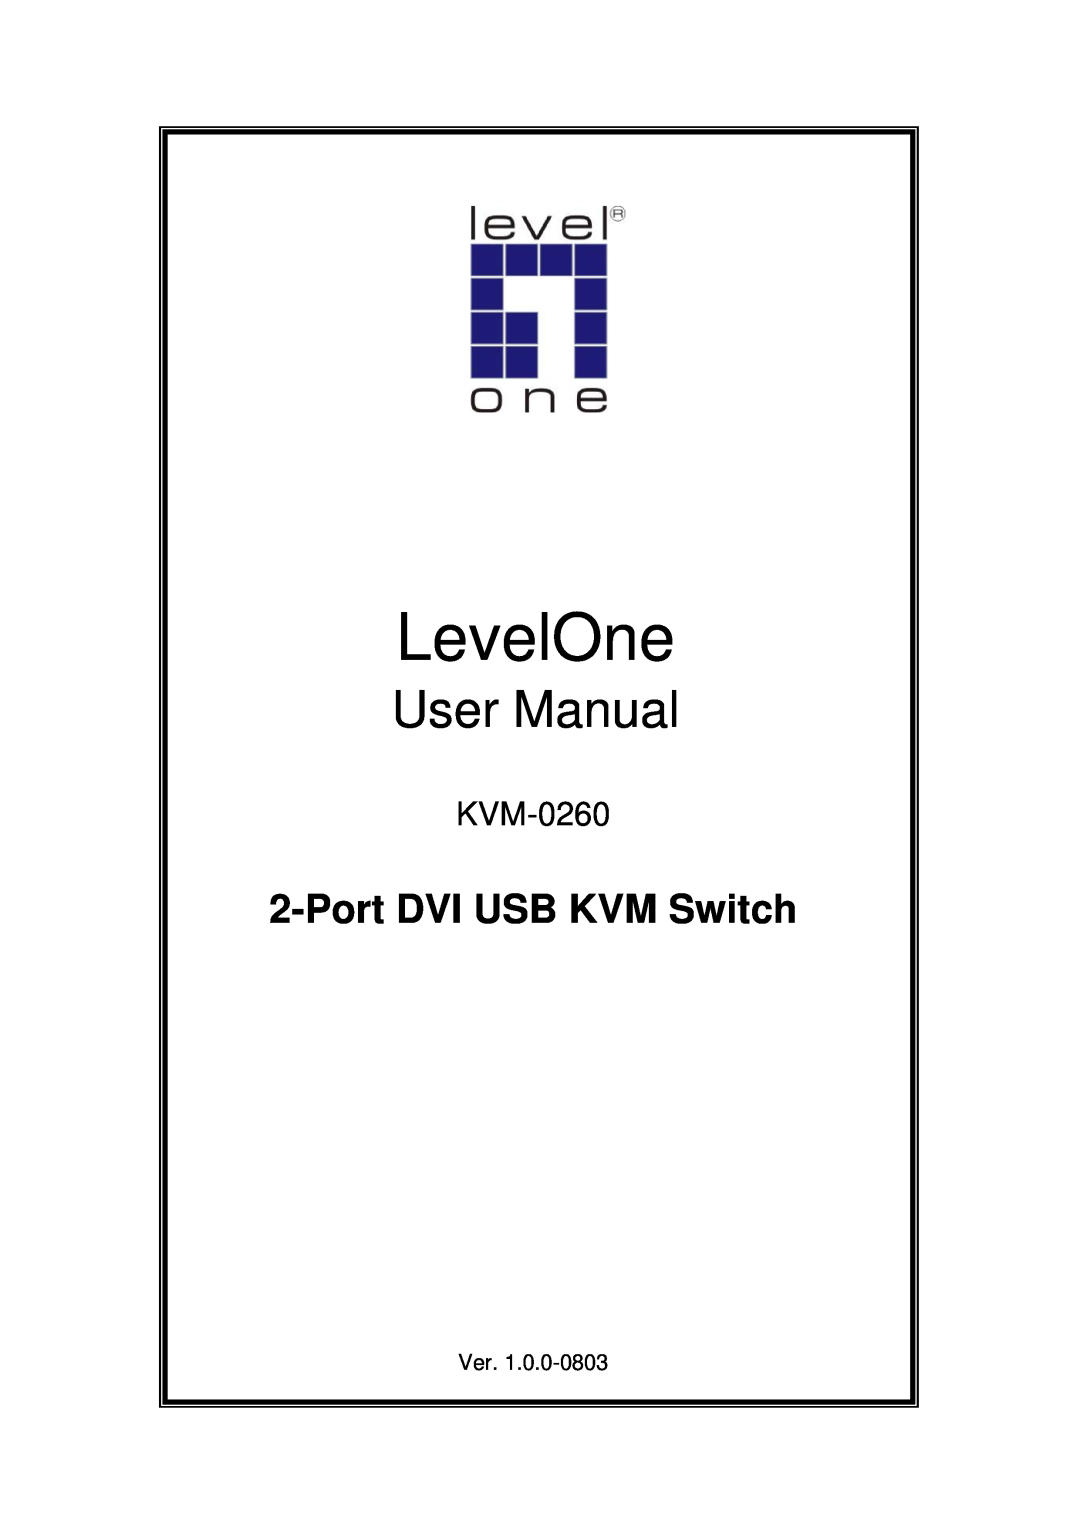 LevelOne level one 2-port dvi usb kvm switch user manual LevelOne, User Manual, Port DVI USB KVM Switch, KVM-0260 